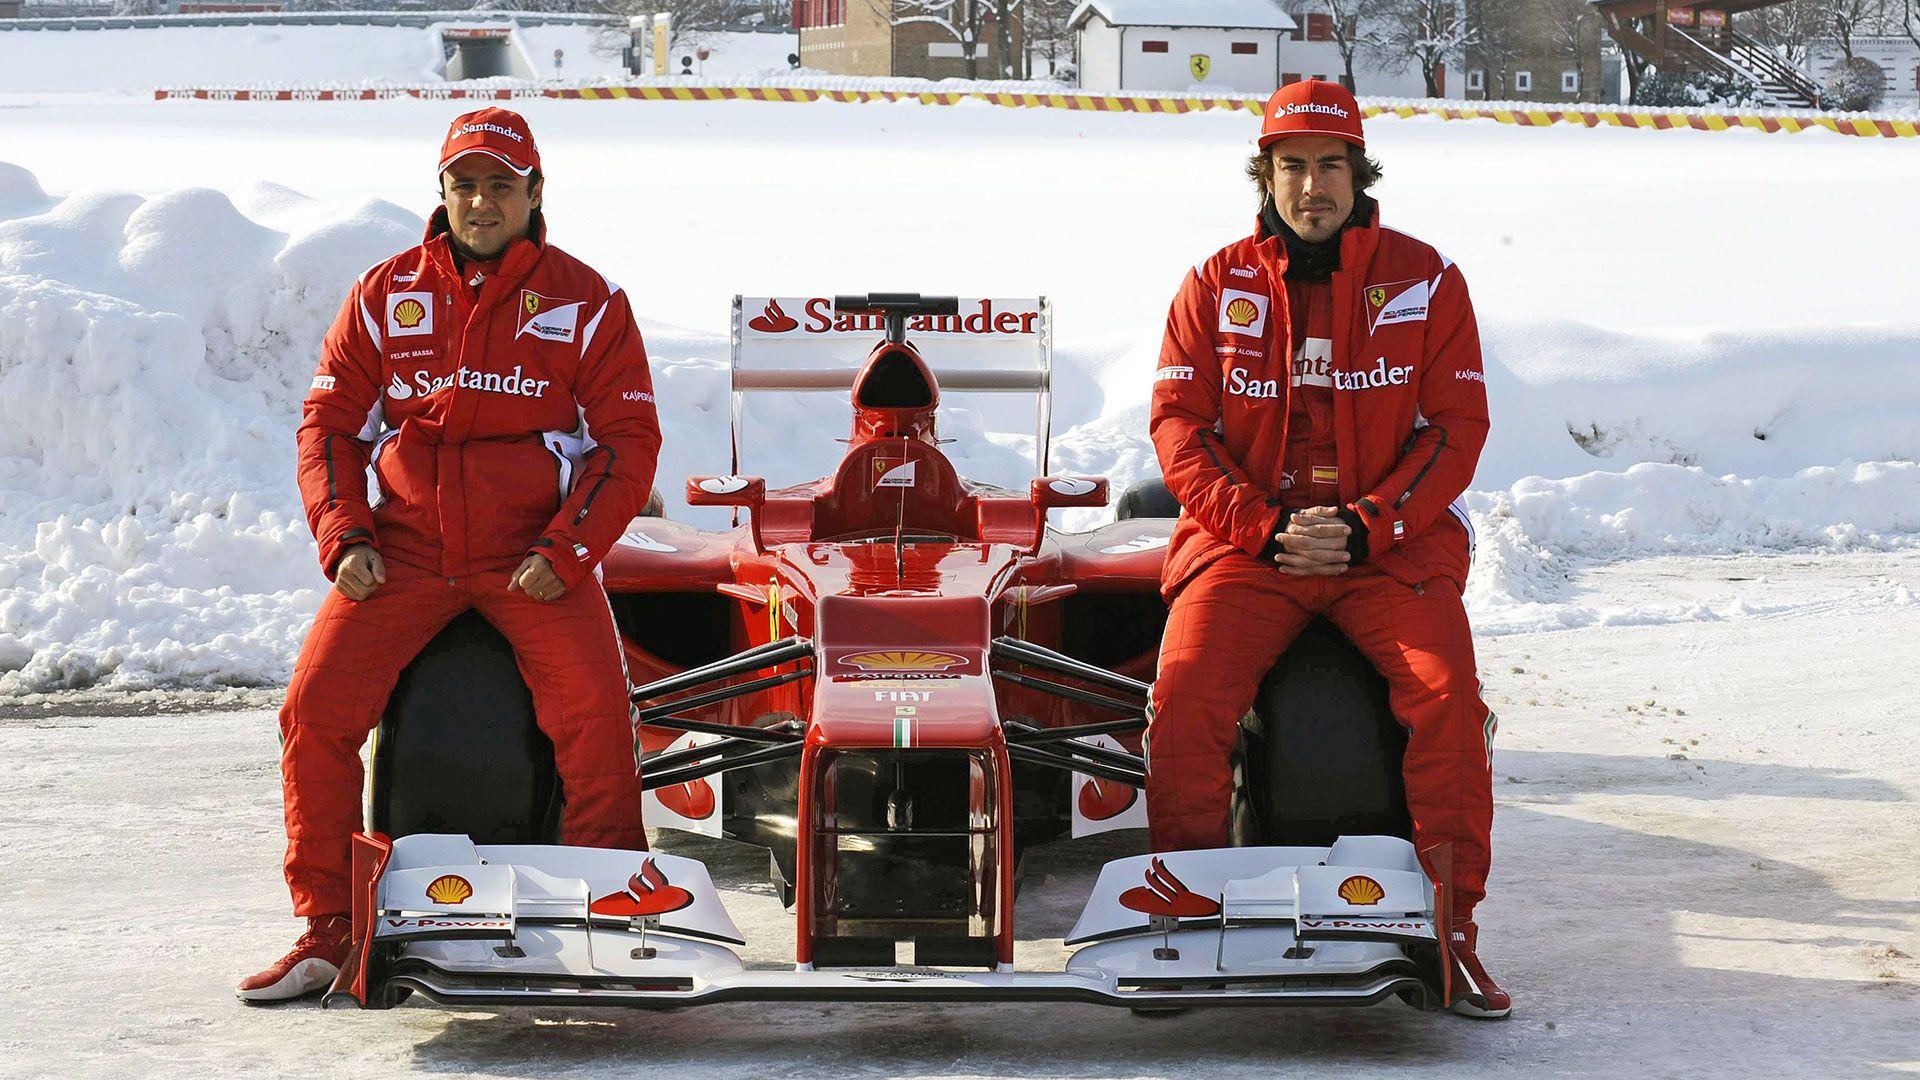 HD Wallpaper 2012 Formula 1 Car Launches